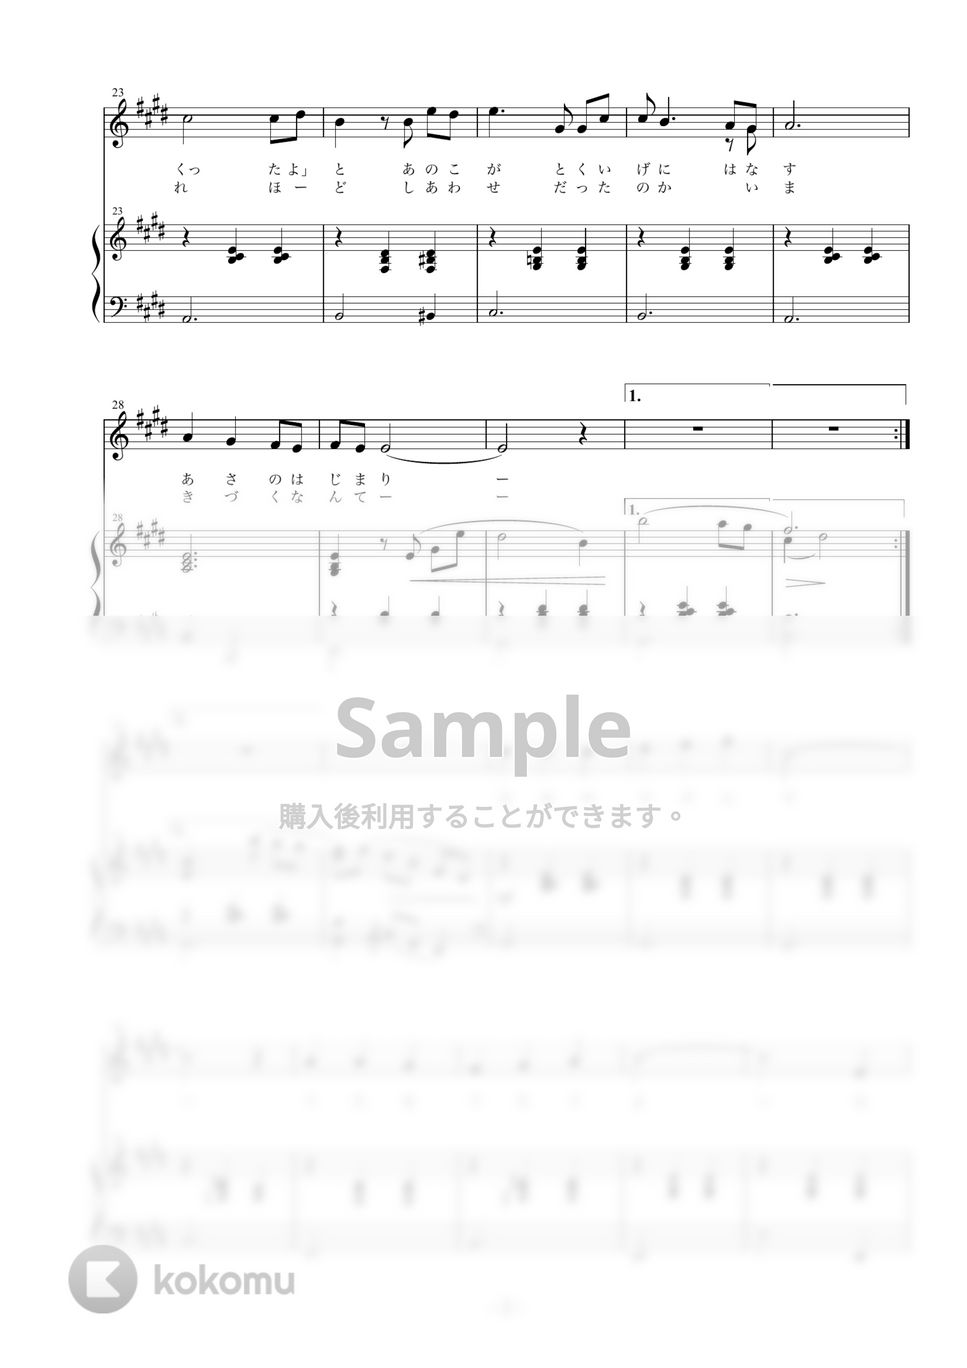 相澤洋正 - 海を見ながら (ソプラノ用歌（ソプラノ+ピアノ）)